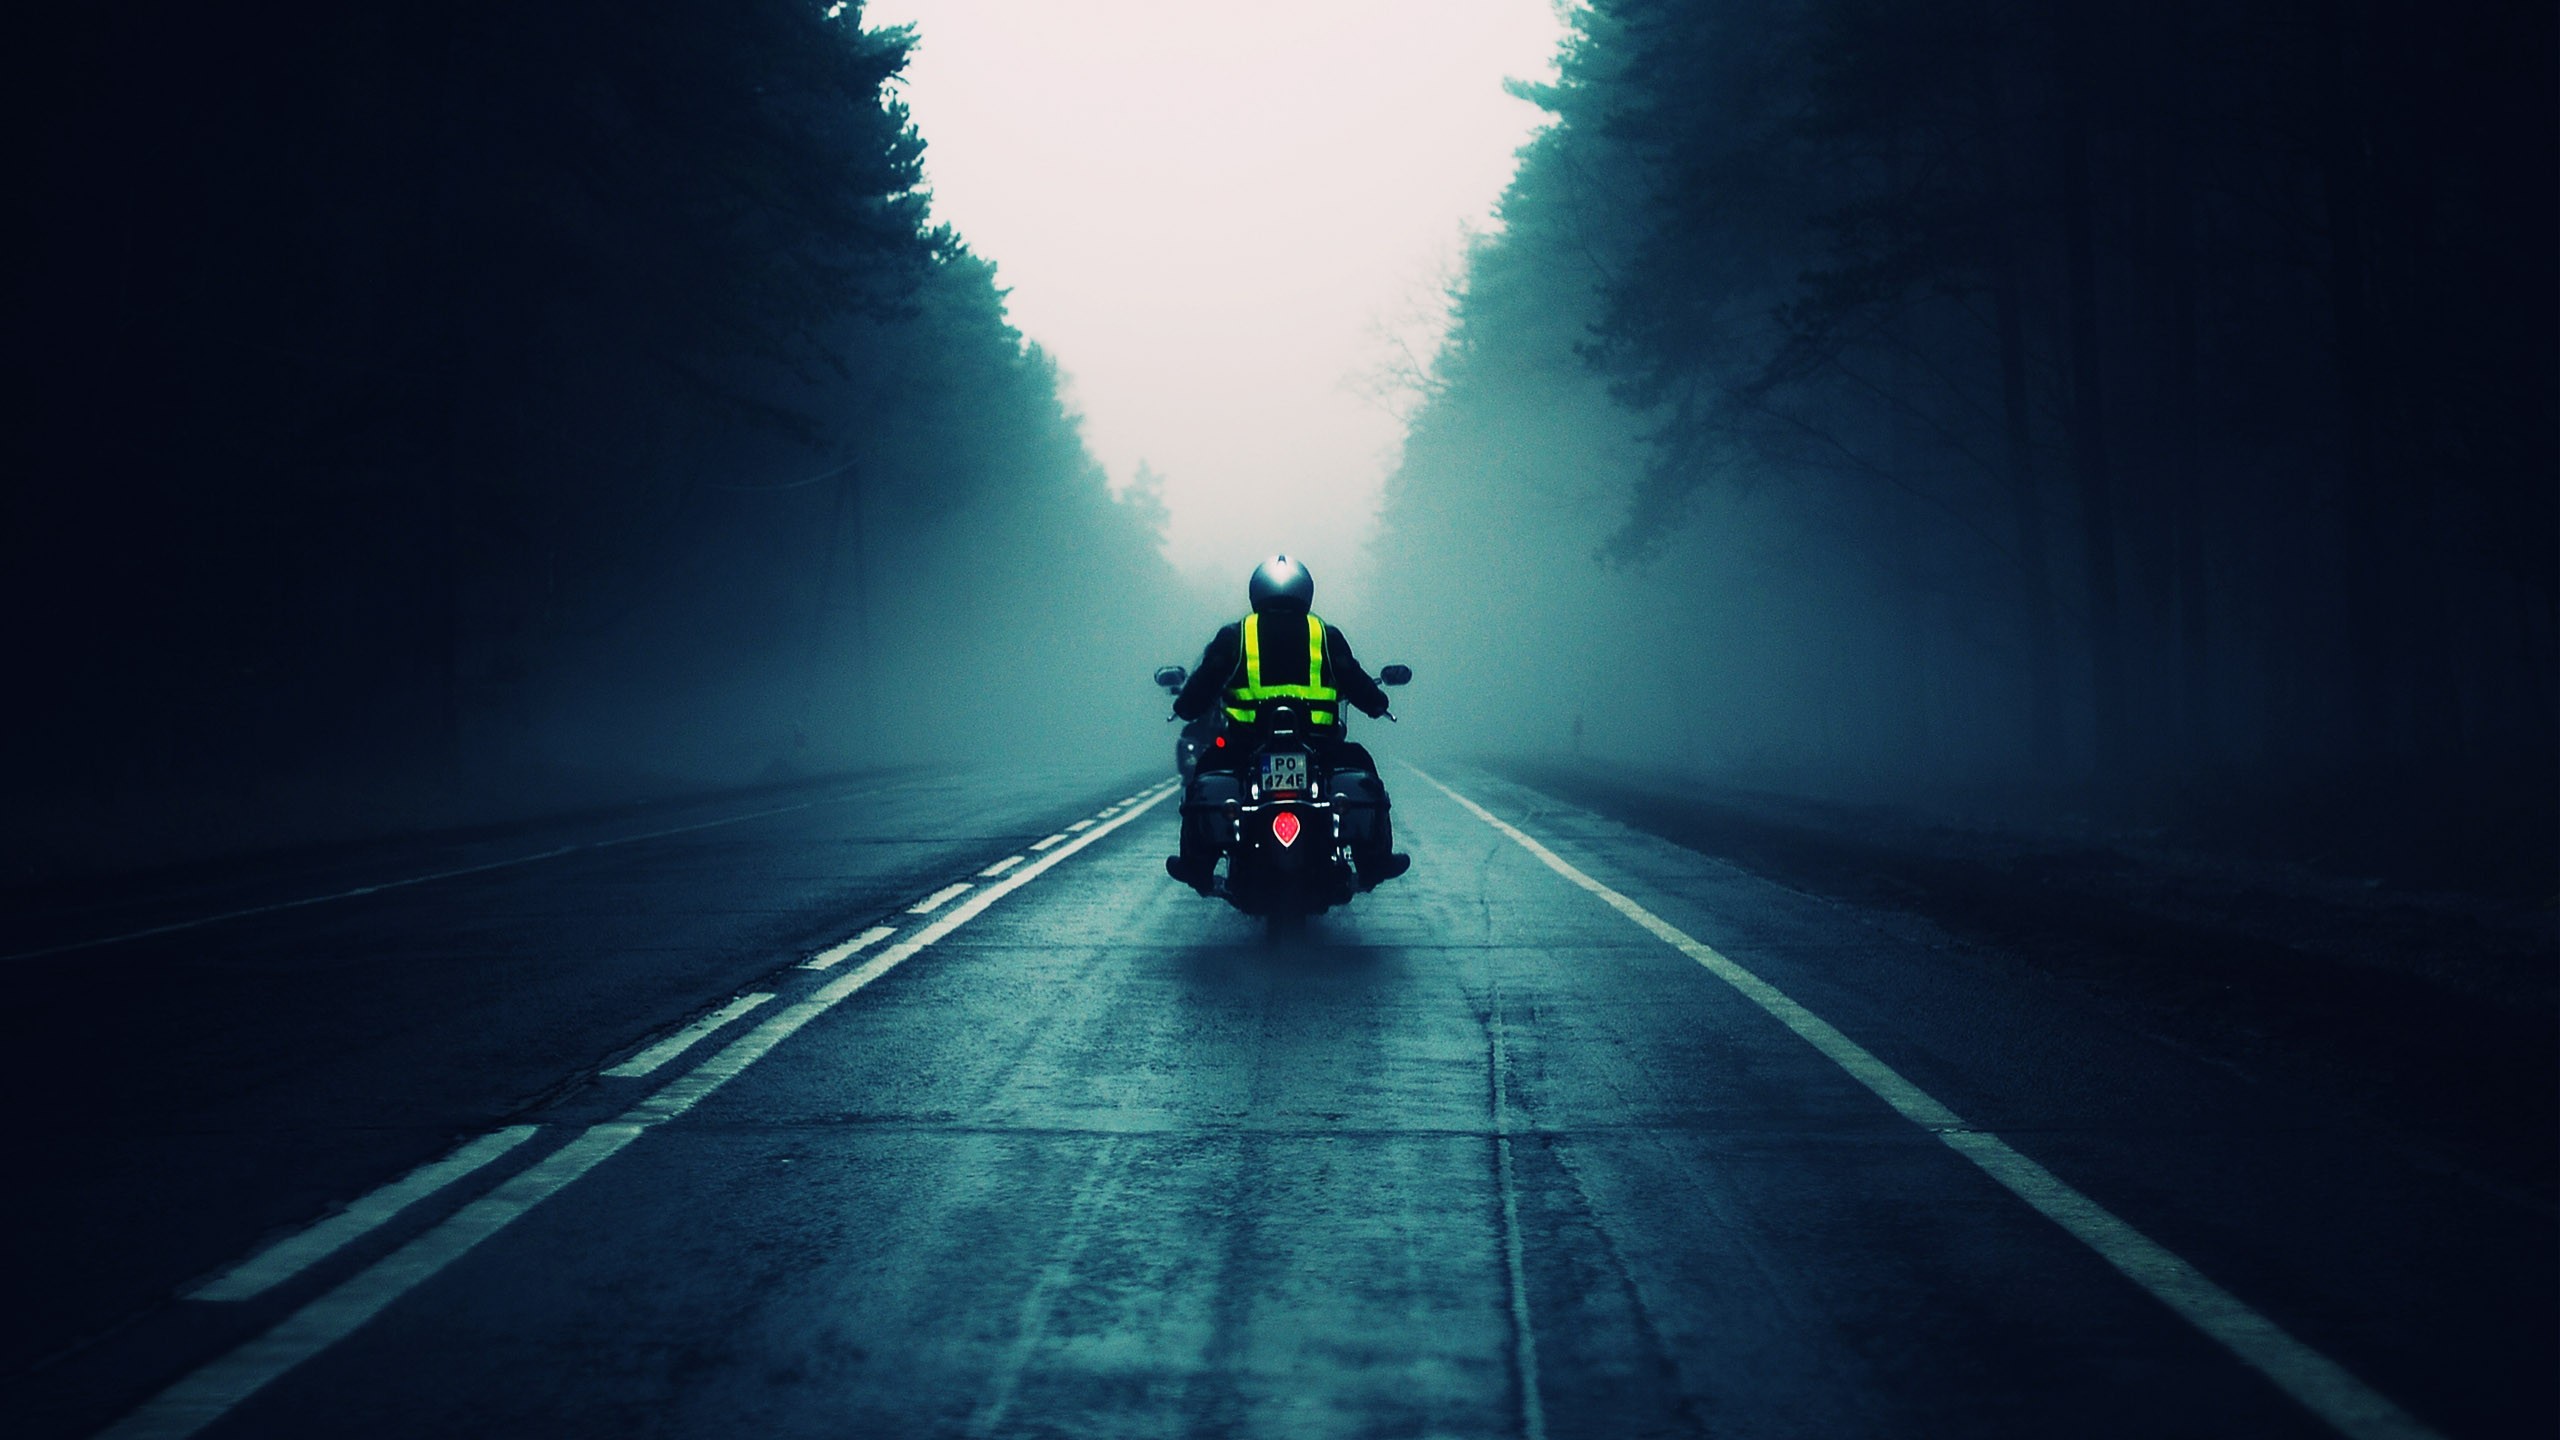 General 2560x1440 motorcycle cruiser road asphalt vehicle teal